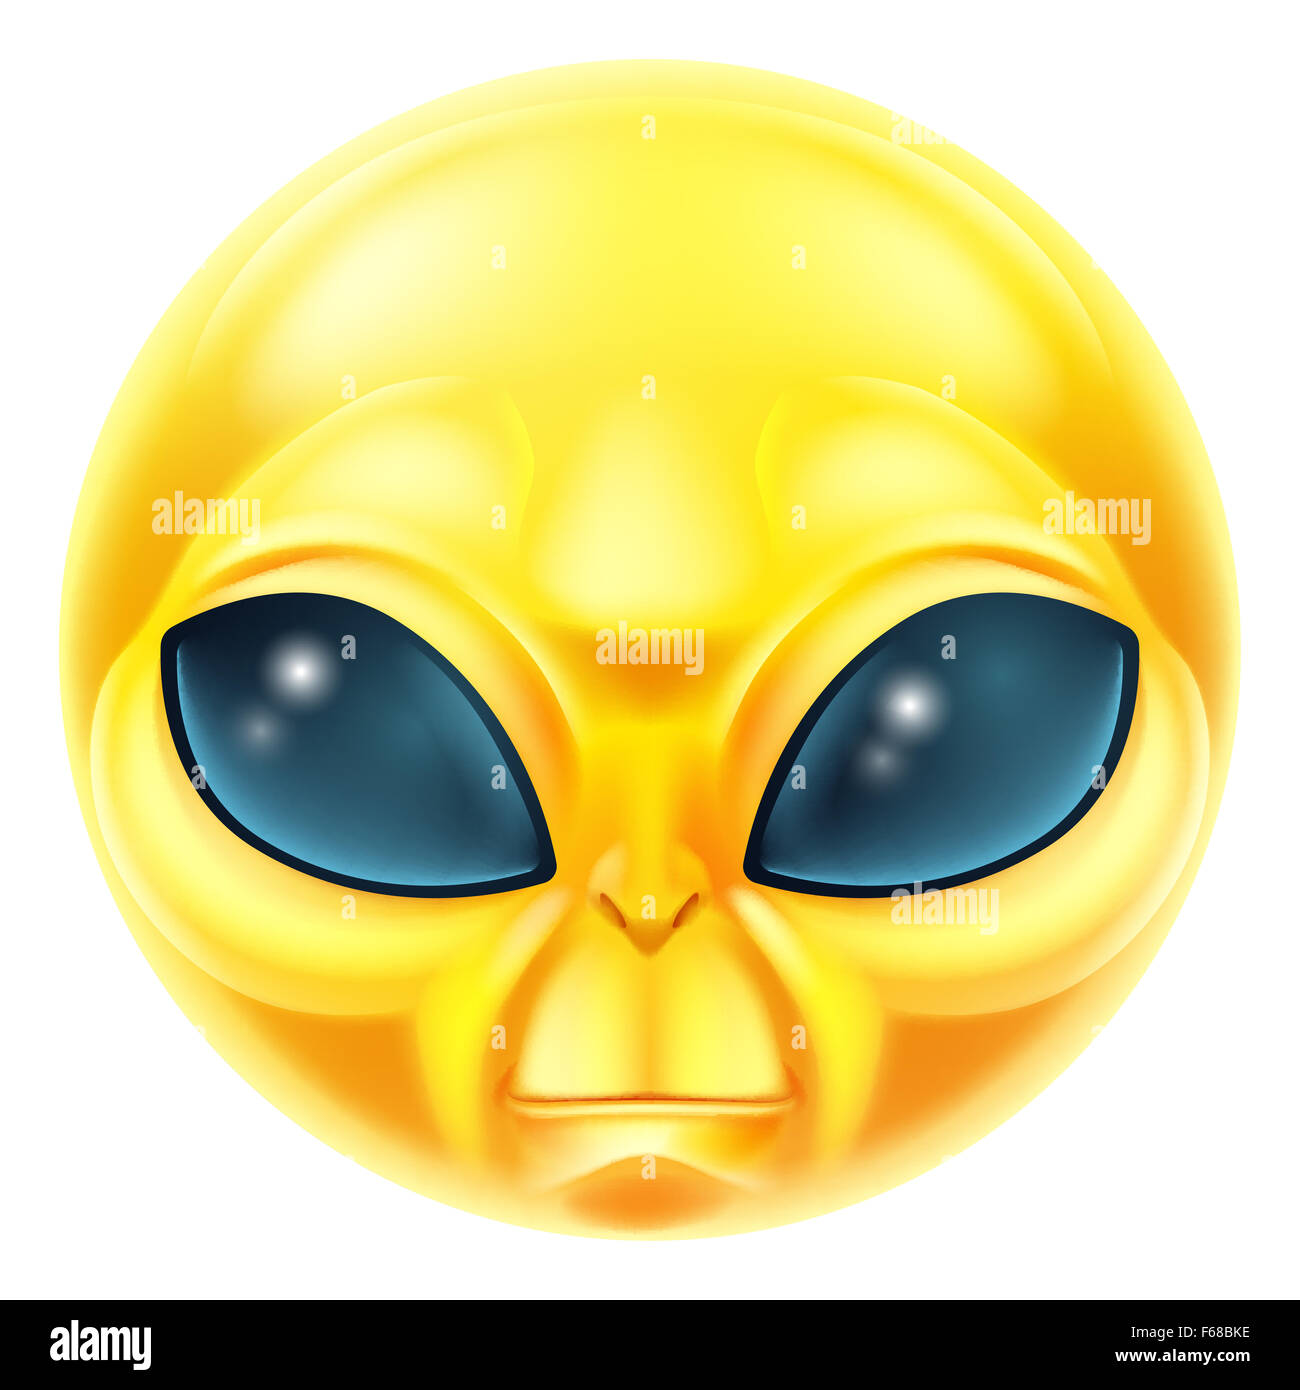 guess the emoji alien rocket